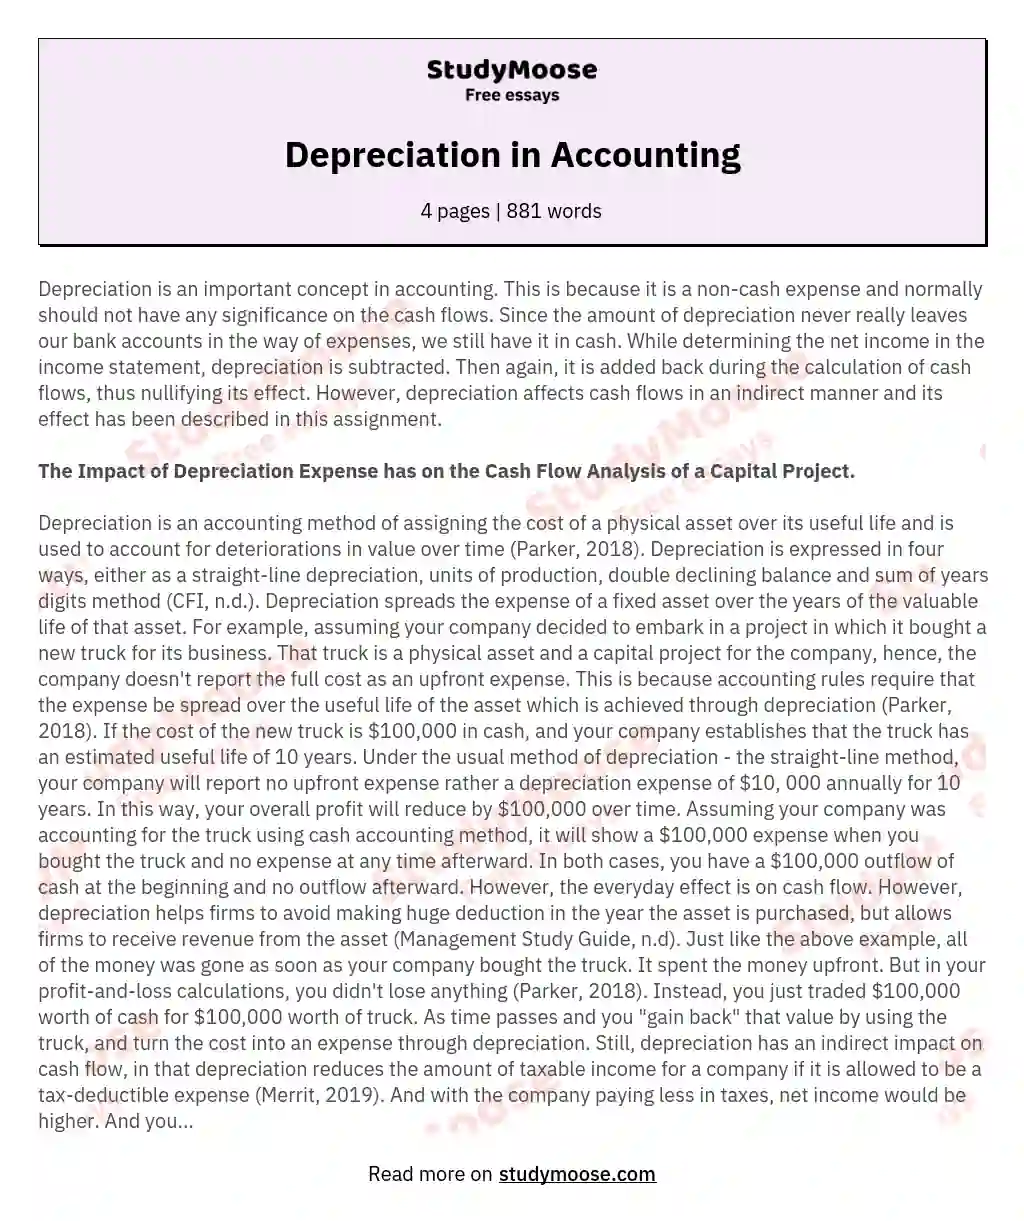 Depreciation in Accounting essay